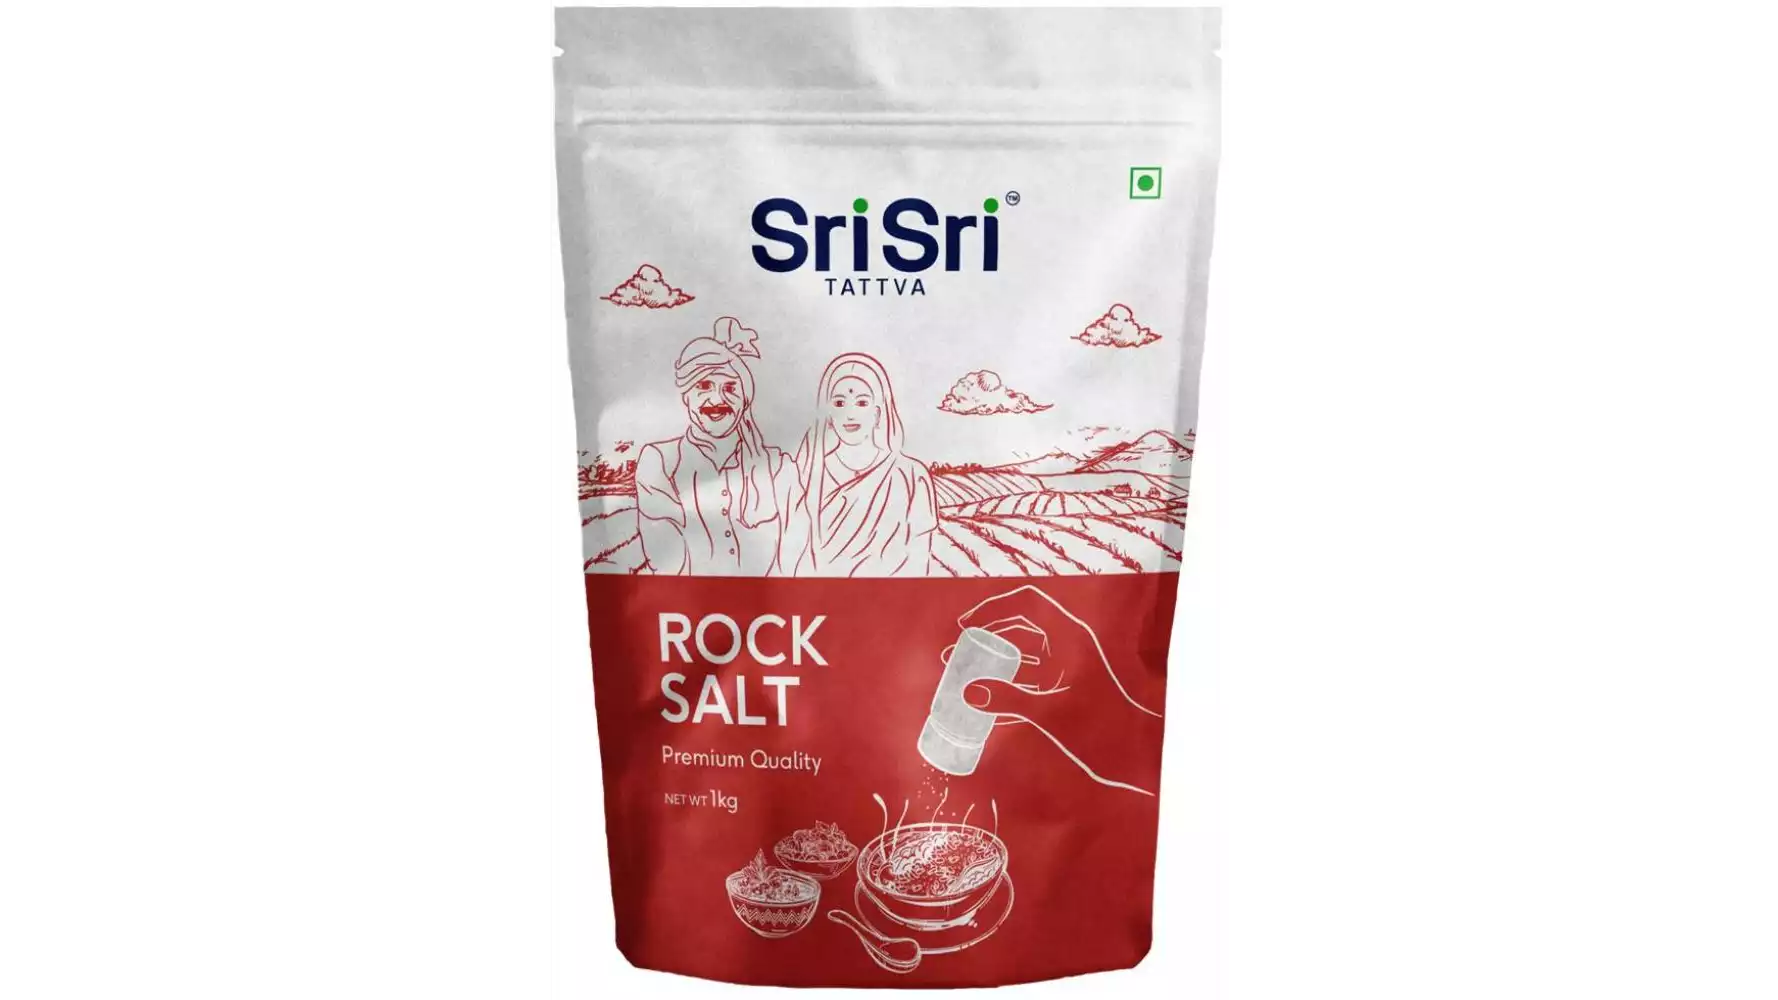 Sri Sri Tattva Rock Salt (1kg)